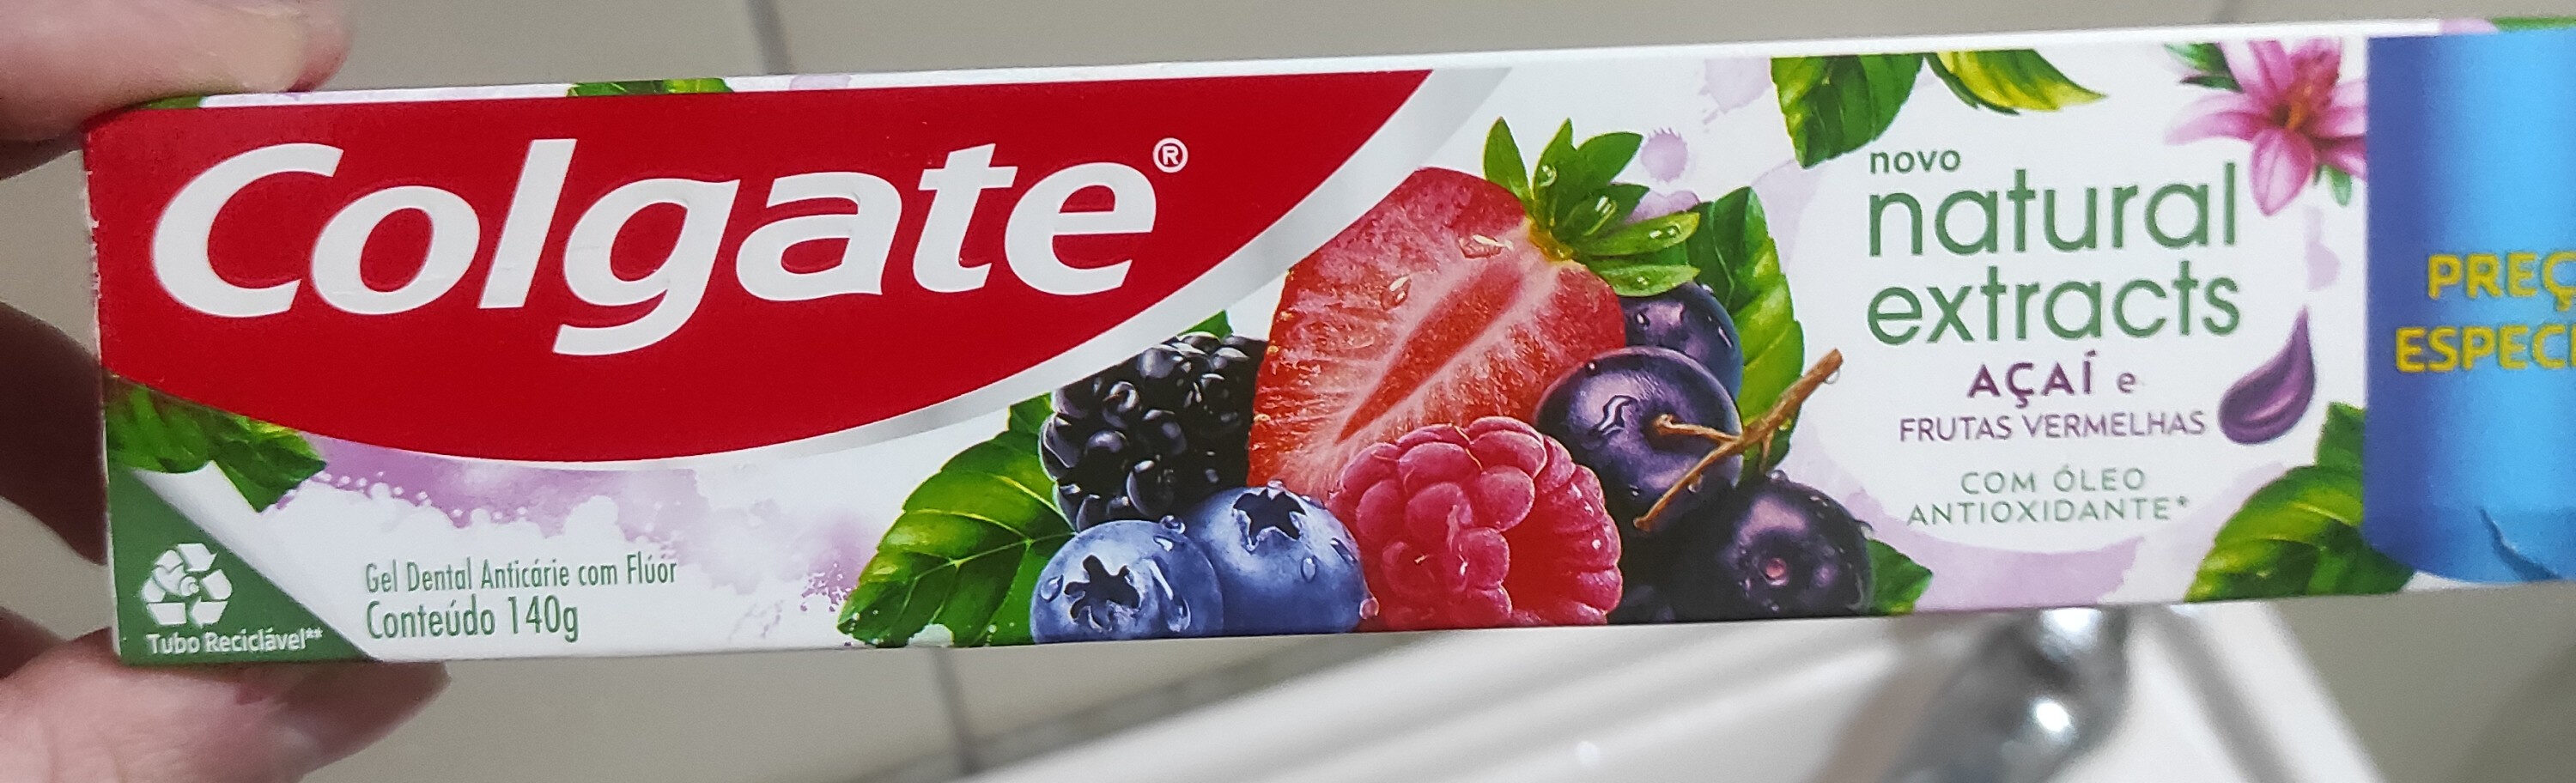 Creme Dental Natural Extracts Açaí e Frutas Vermelhas - Tuote - pt